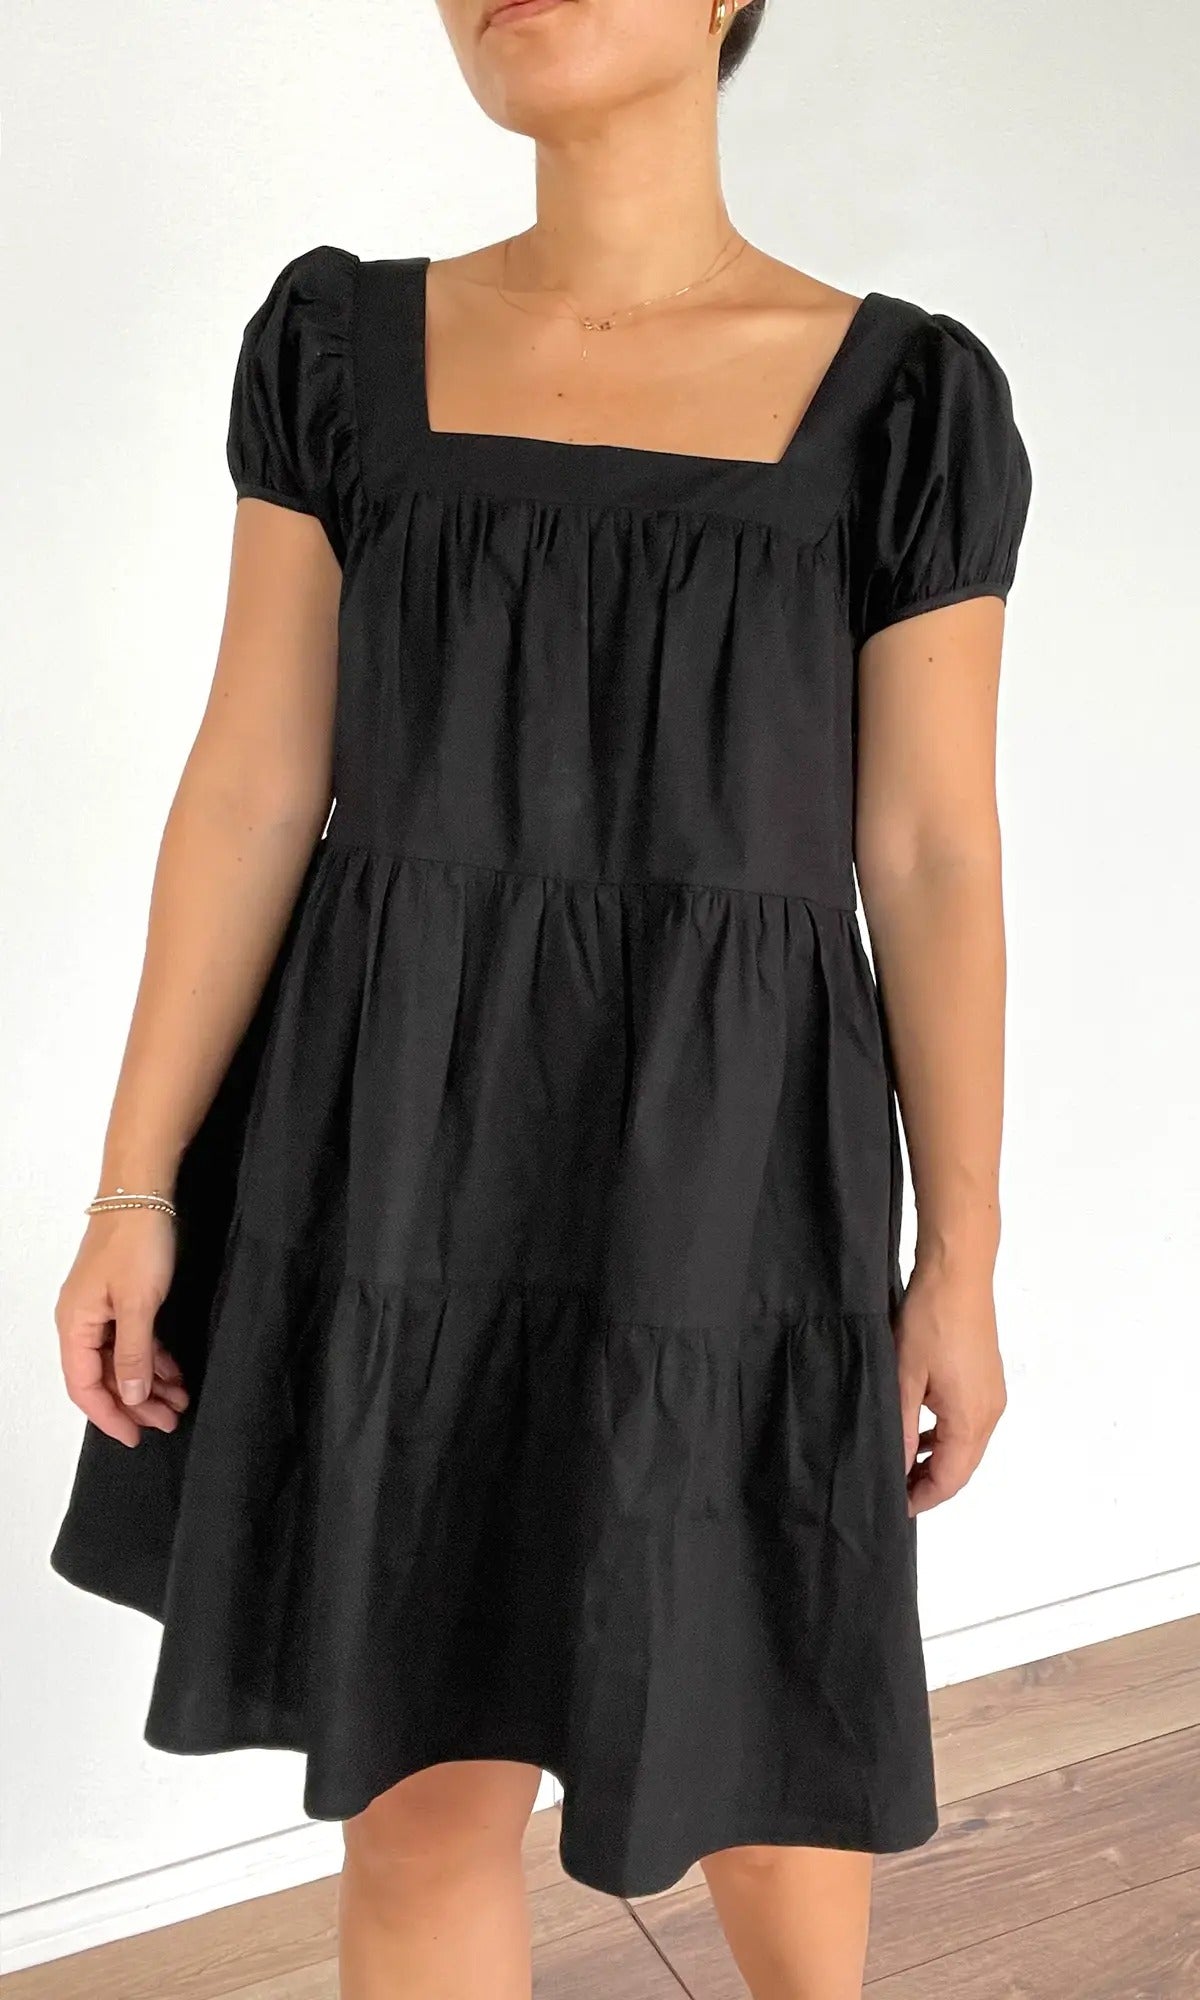 Lora Poplin Cap Sleeve Tiered Dress in Black